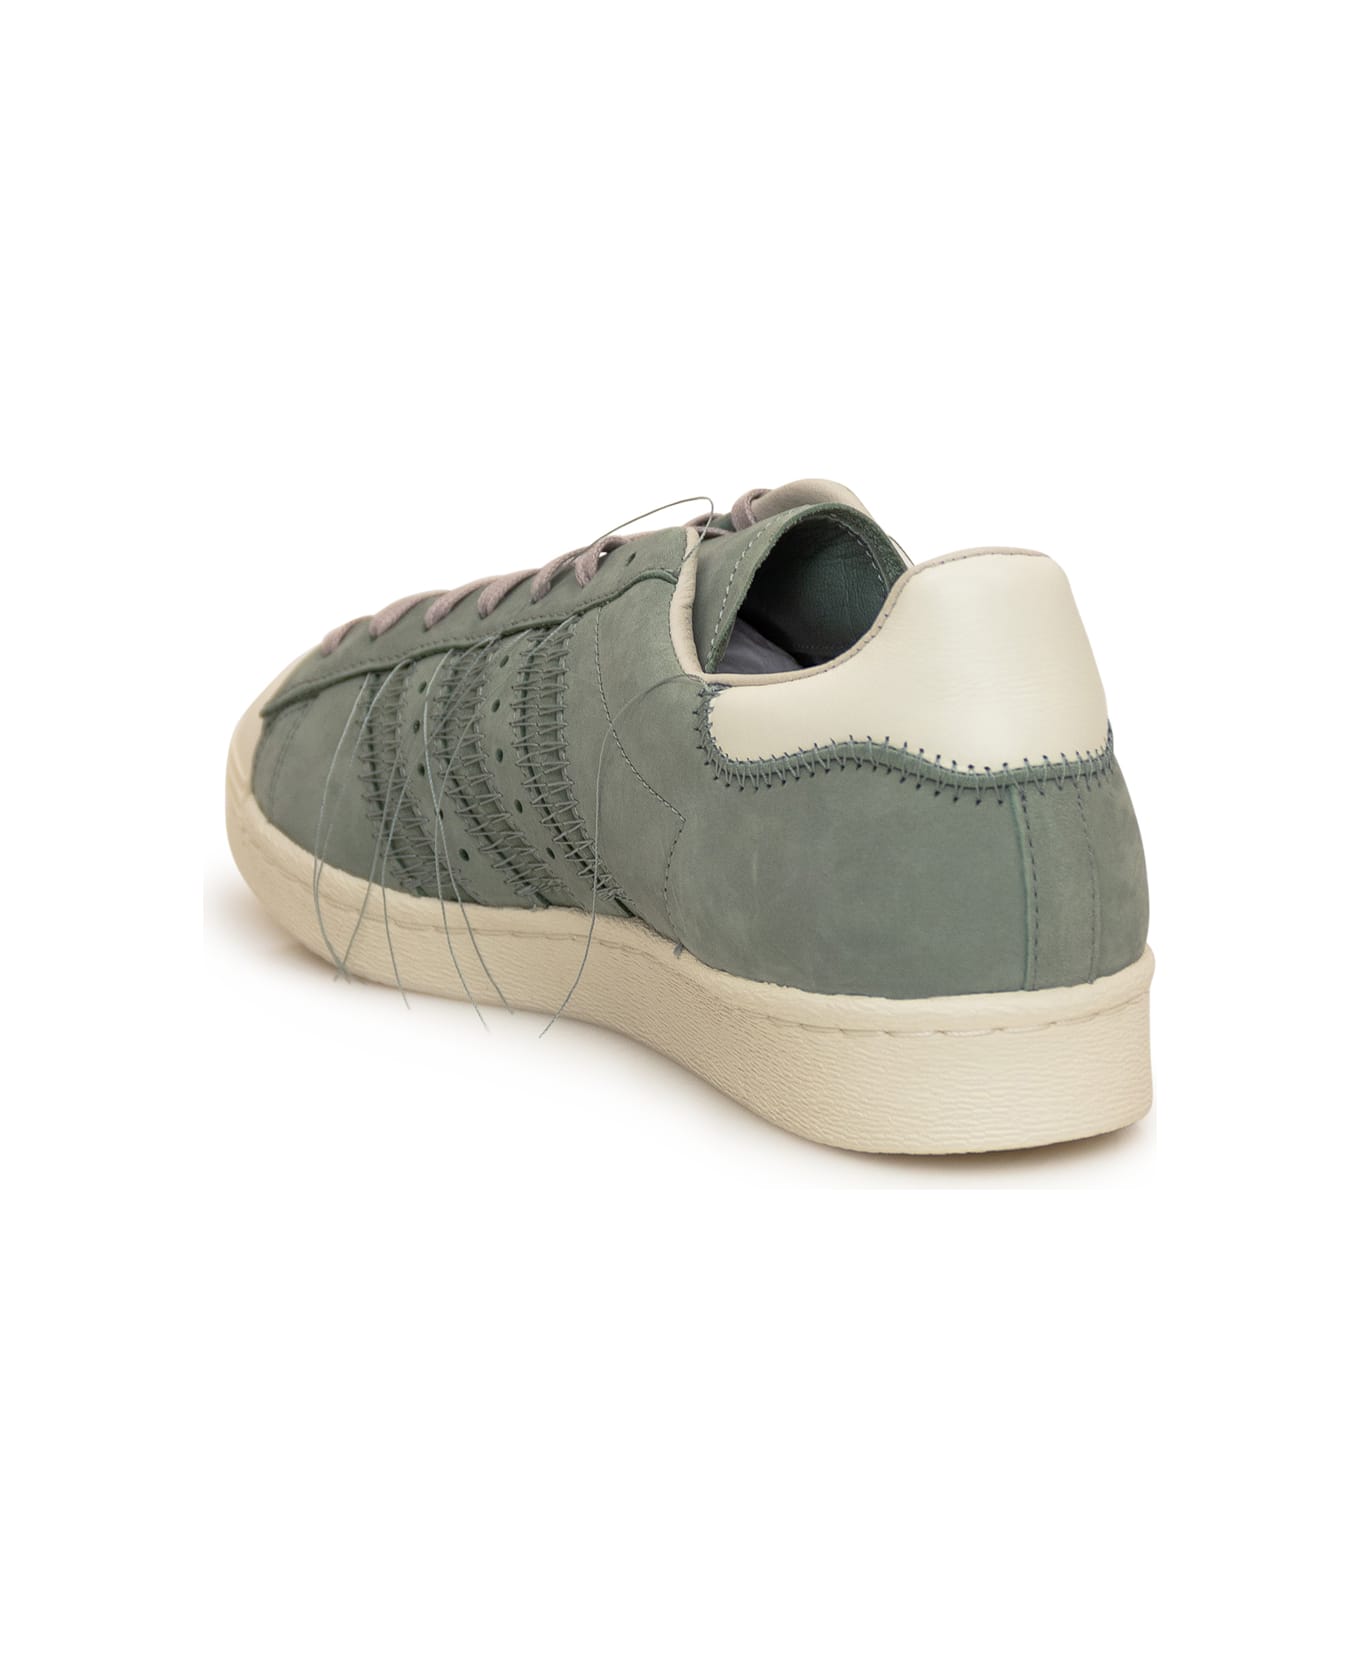 Y-3 Adidas Superstar Sneakers - SILGRN/OWHITE/LBROWN